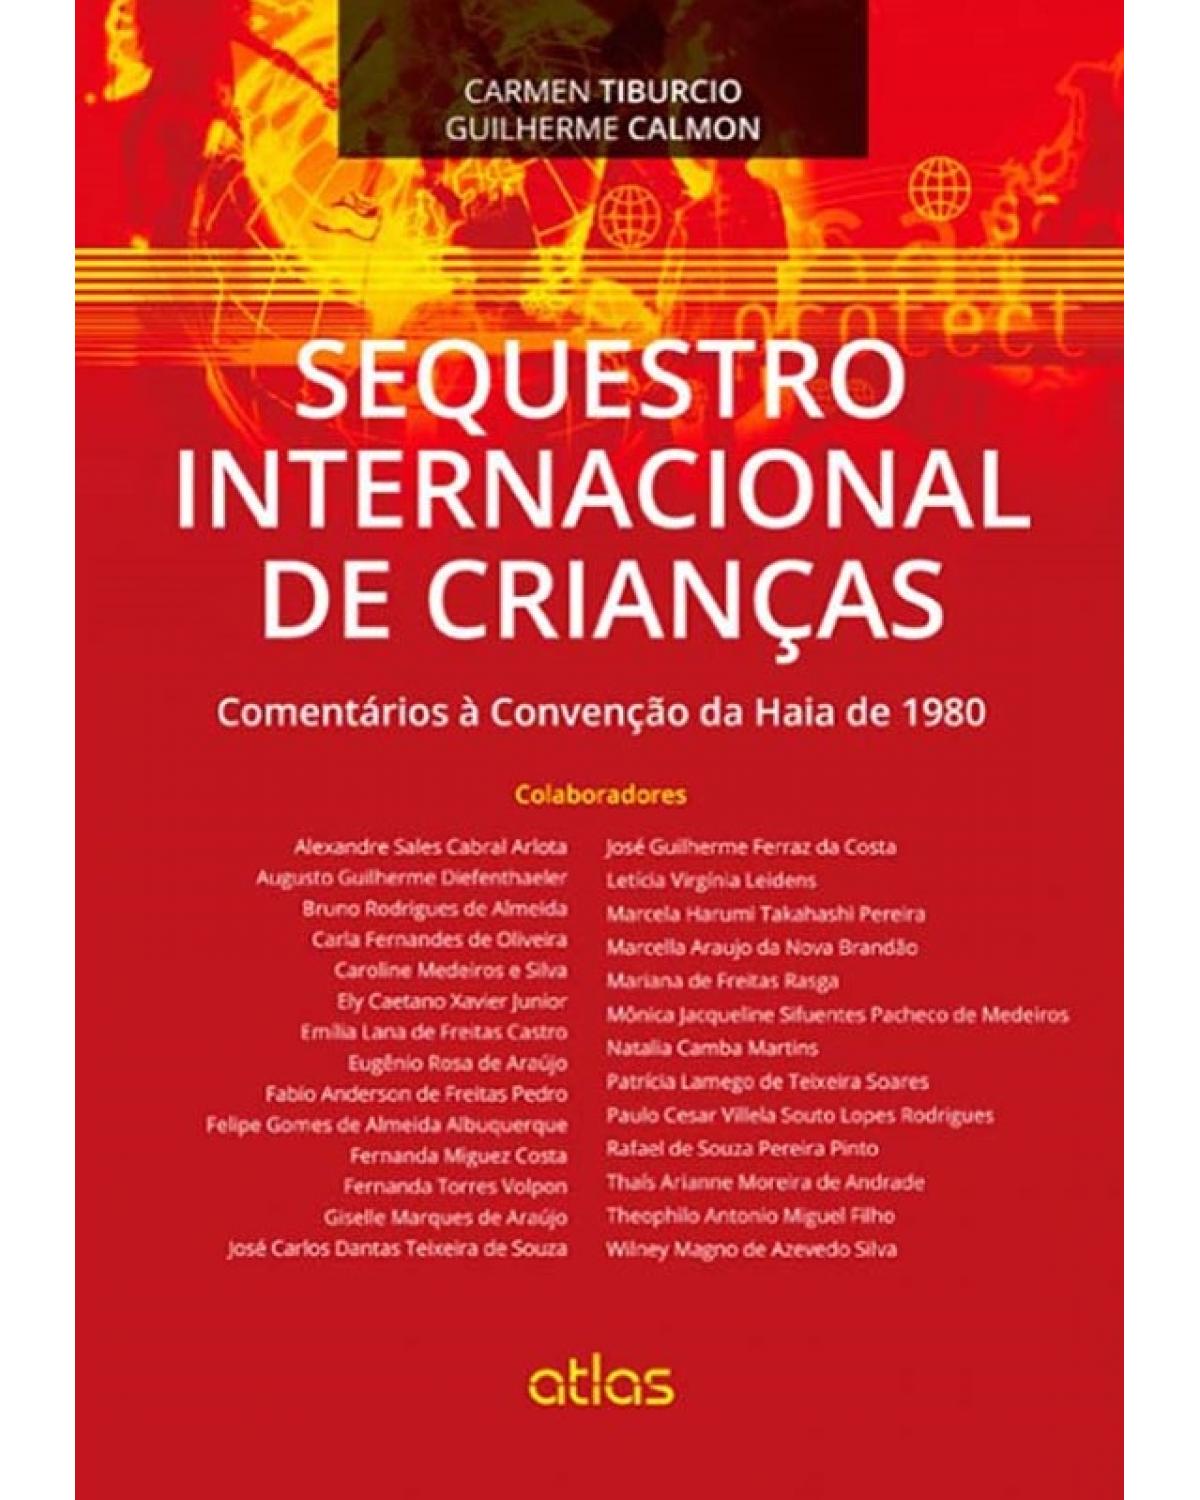 Sequestro internacional de crianças - Comentários à Convenção da Haia de 1980 - 1ª Edição | 2014